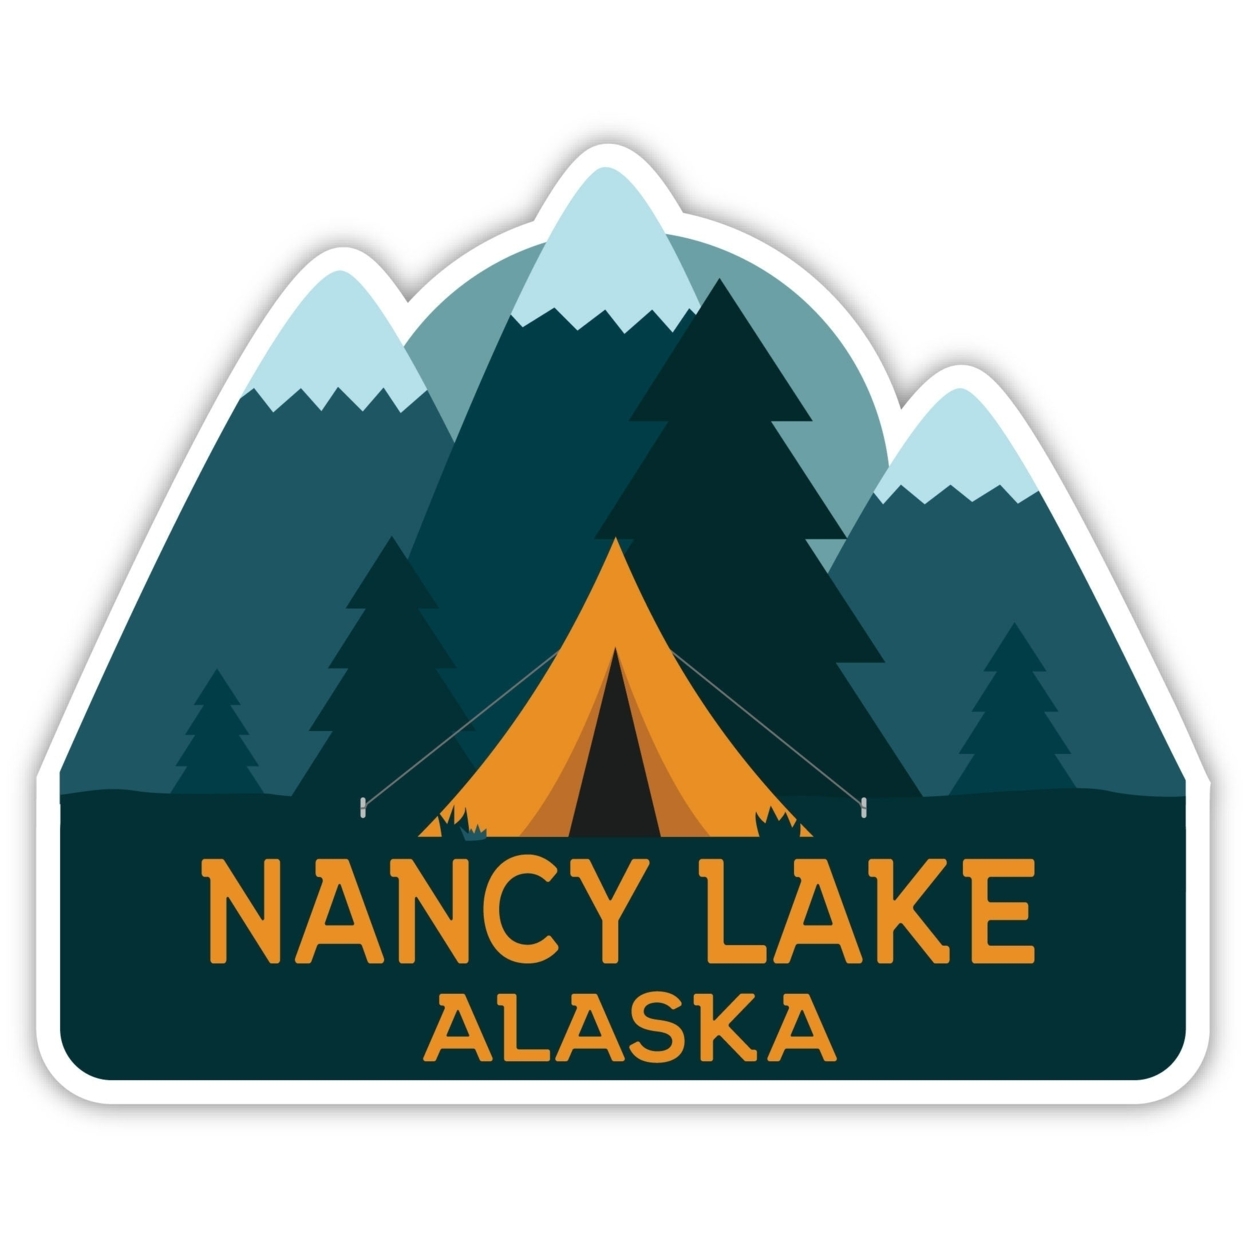 Nancy Lake Alaska Souvenir Decorative Stickers (Choose Theme And Size) - Single Unit, 2-Inch, Tent